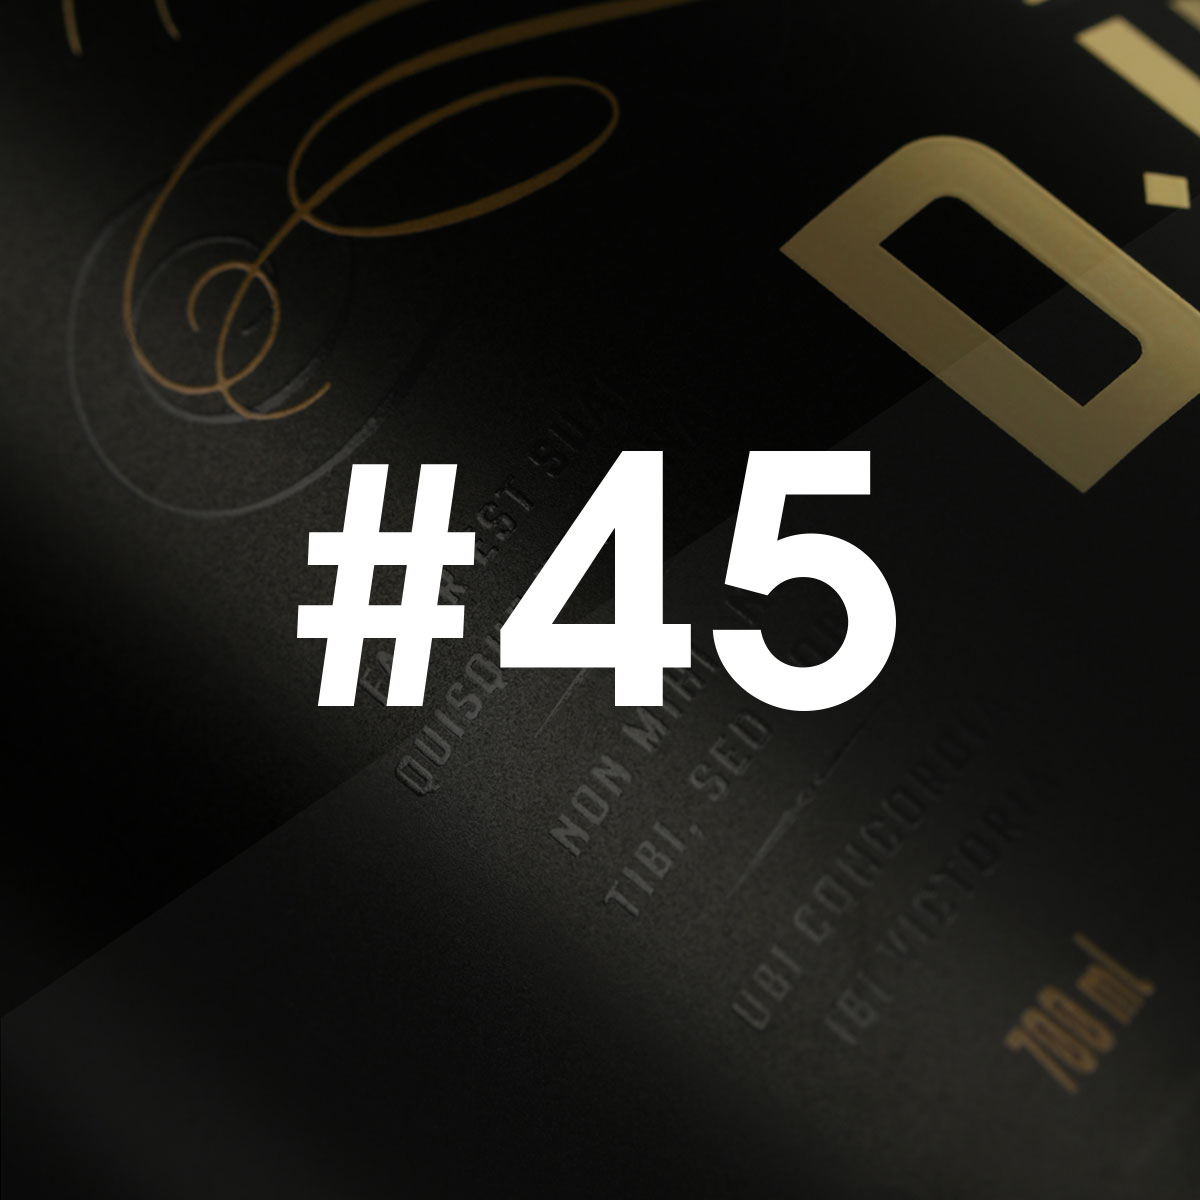 linea-news45-duc-whisky-boobajpg